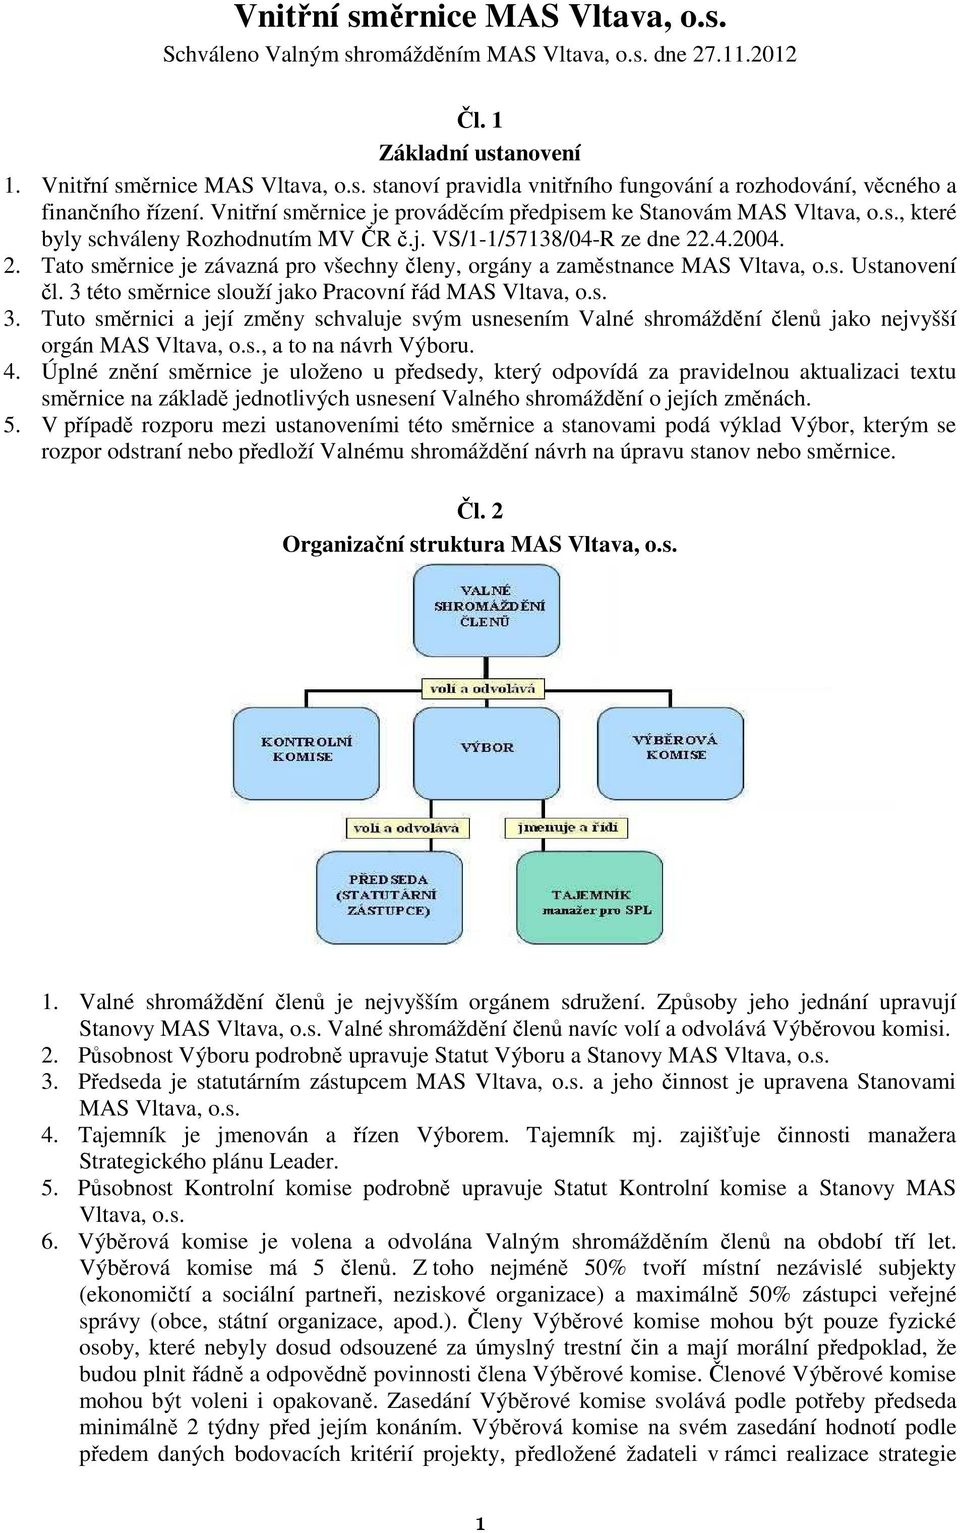 .4.2004. 2. Tato směrnice je závazná pro všechny členy, orgány a zaměstnance MAS Vltava, o.s. Ustanovení čl. 3 